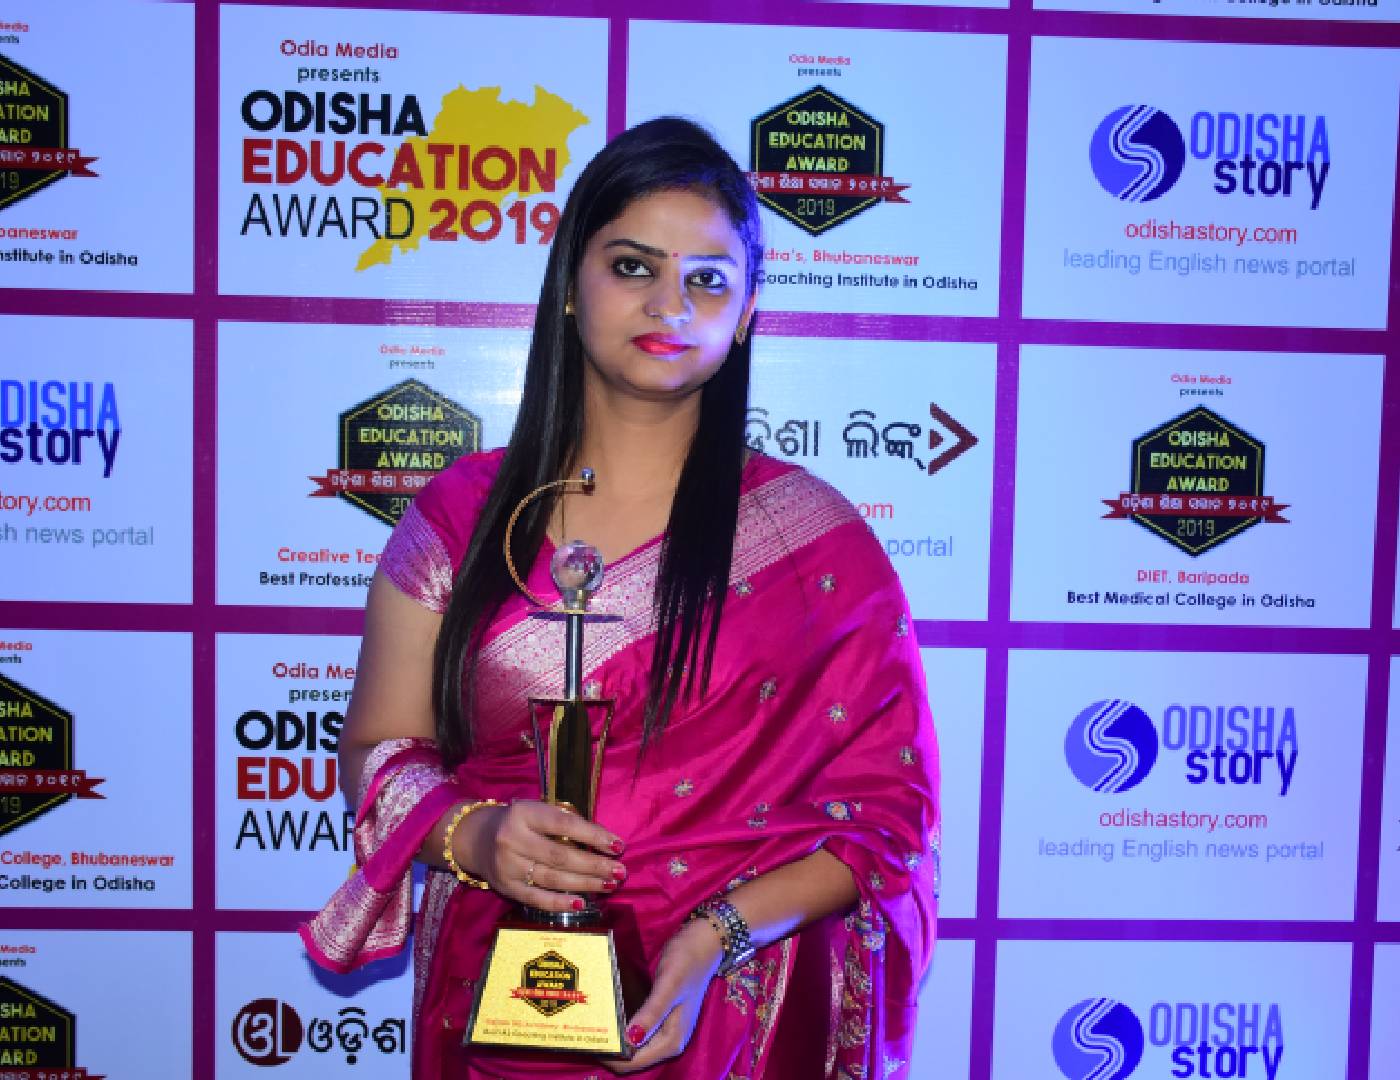 Odisha Education Award 2019 - Jyoti Kumari